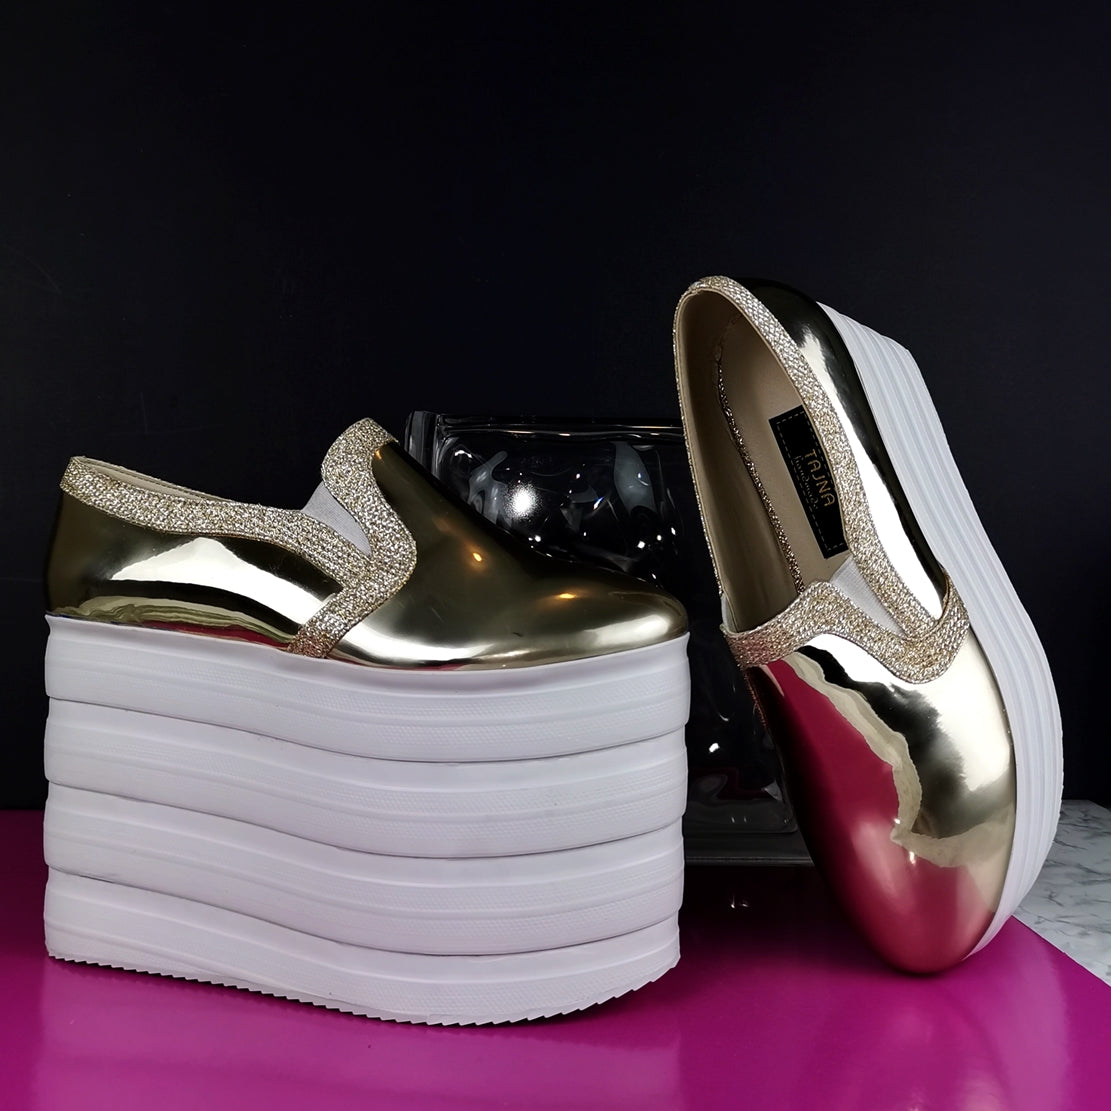 Buy Flat n Heels Womens Beige Sandals FnH 8213-BG at Amazon.in